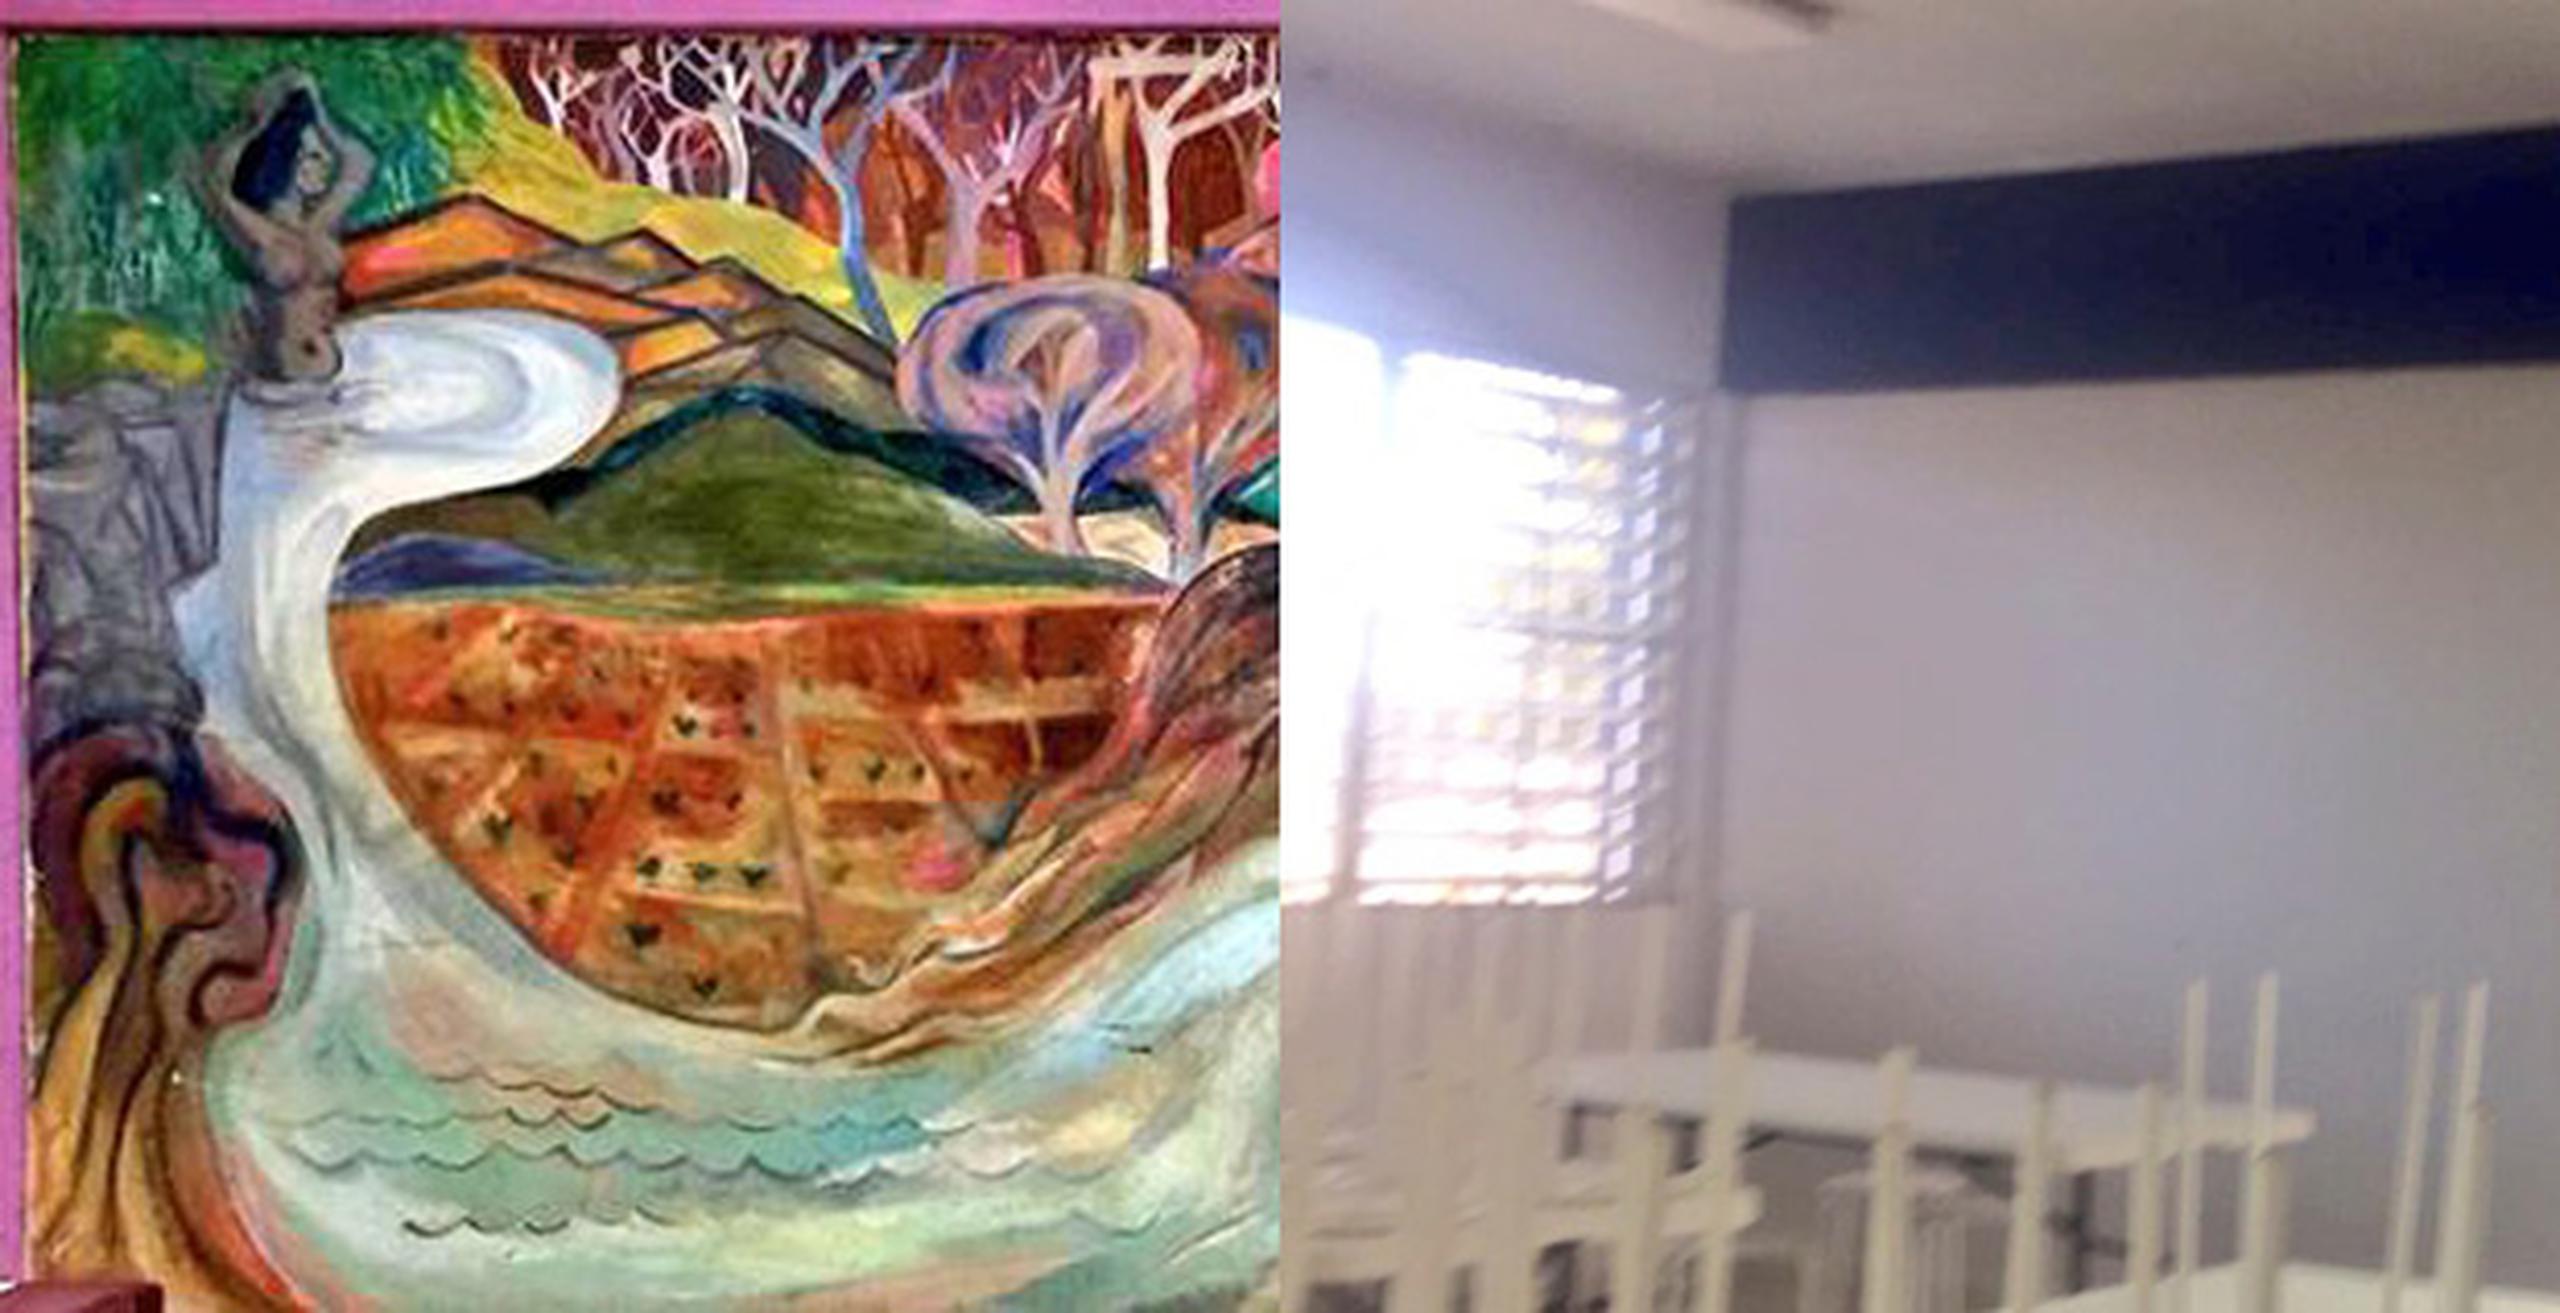 A la izquierda, parte del mural y a la derecha la pintura que lo cubrió. (Suministrada)